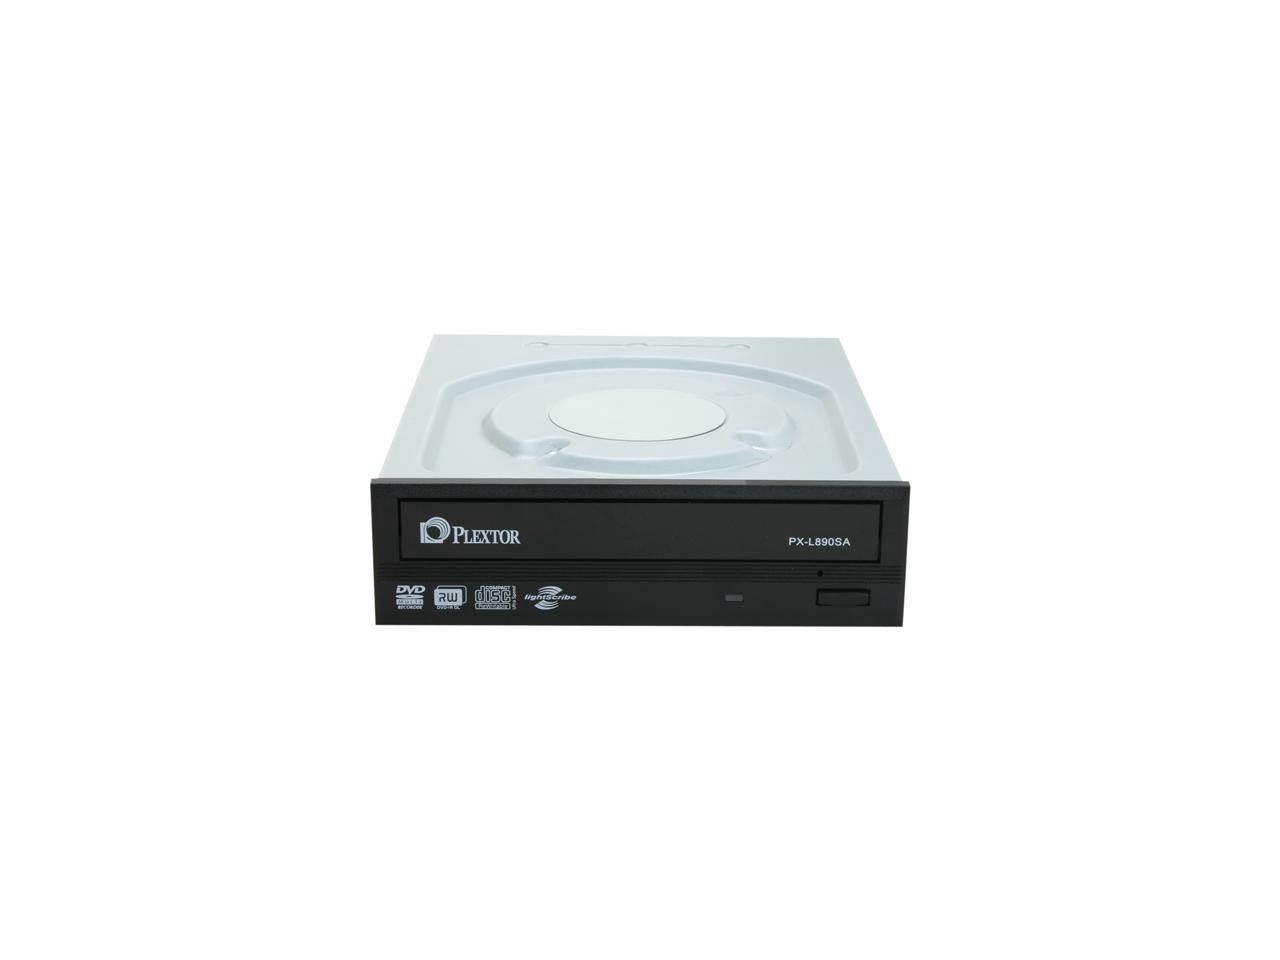 PLEXTOR 24X Internal DVD Super Multi Drive Black SATA Model PX 